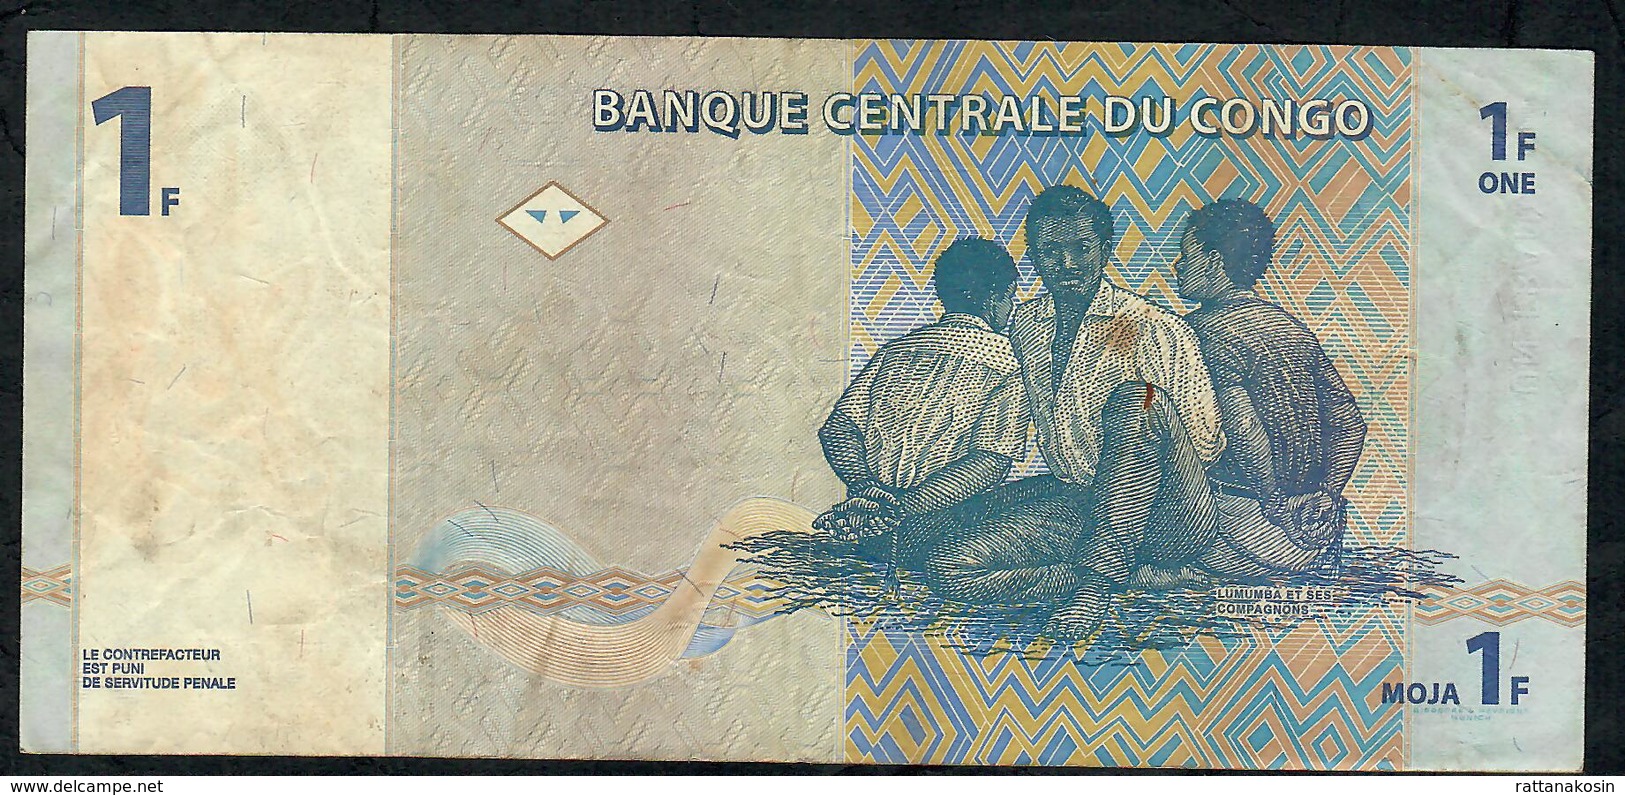 CONGO D.R. P85a 1 FRANC 1.11.1997, Printer G & D,  VF NO P.h. ! - République Démocratique Du Congo & Zaïre